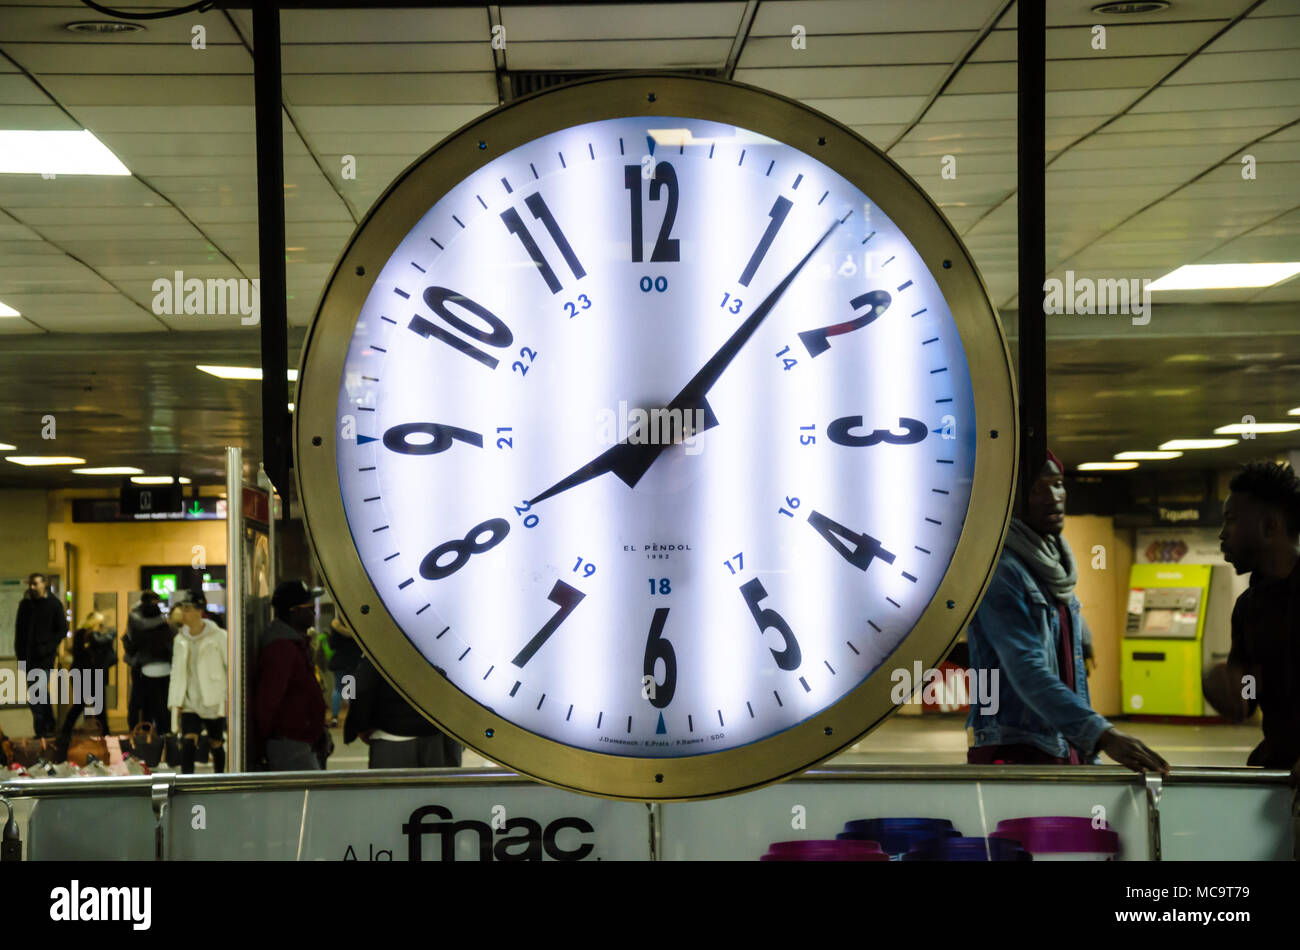 Eine grosse analoge Uhr auf der Plaza de Catalunya Bahnhof in Barcelona, Spanien. Stockfoto